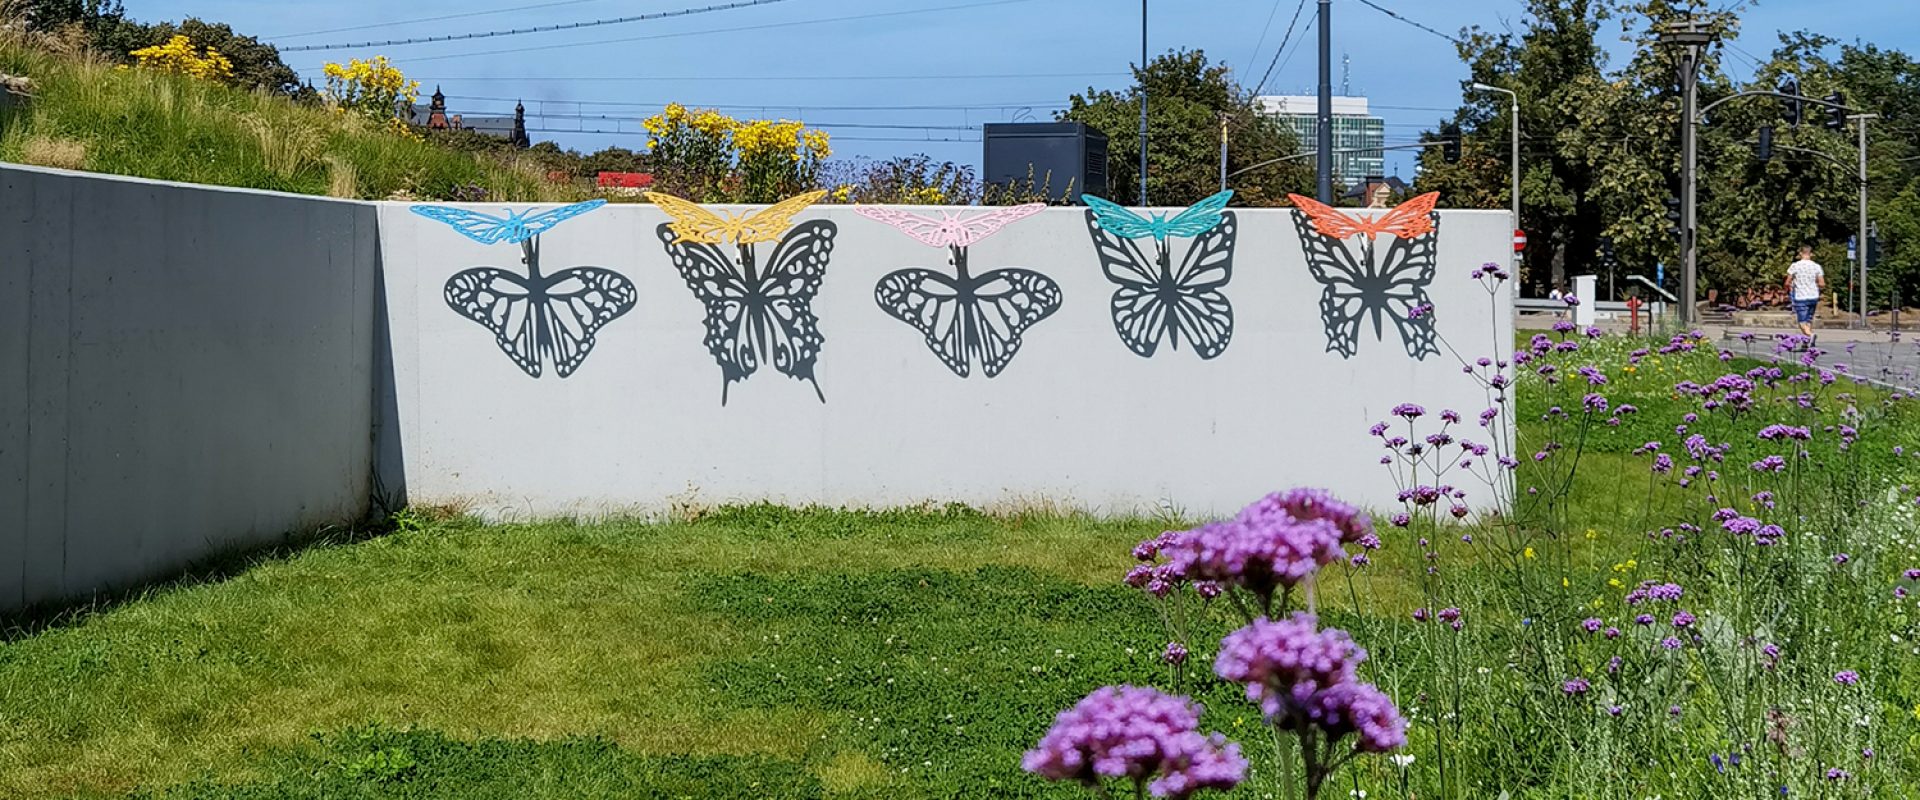 Sun-sensing-butterflies-shadow-installation-art-installation-01